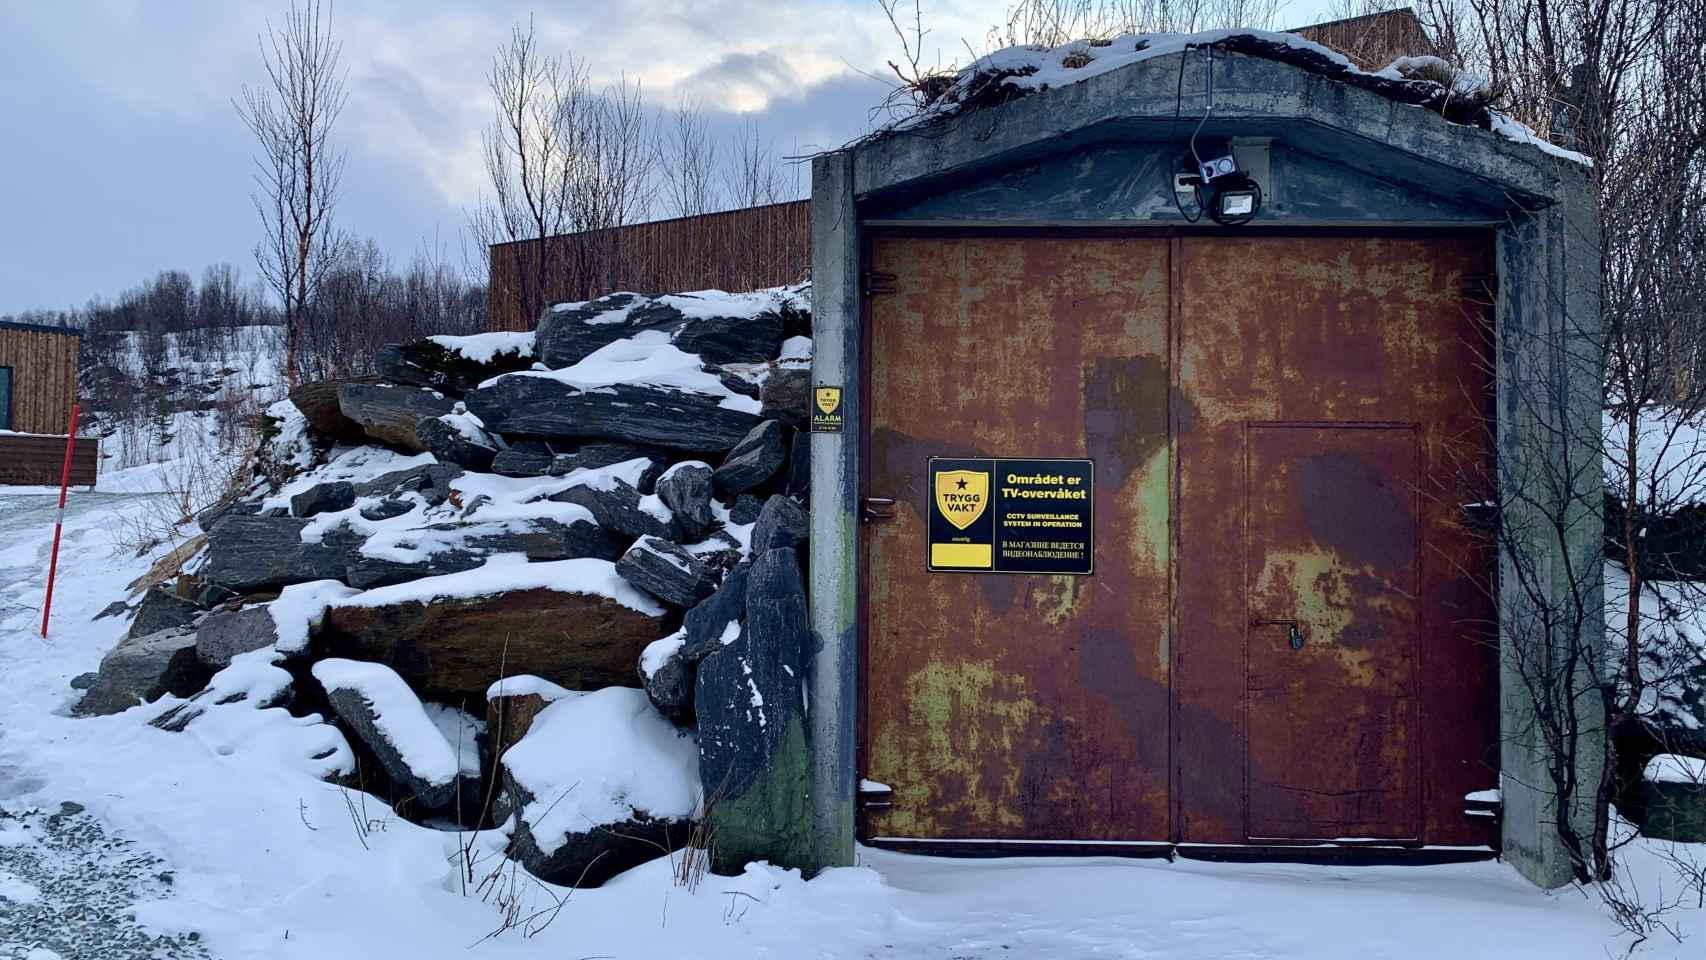 Esta no es la cabina, sino un bunker de la II Guerra Mundial que usan de almacenamiento